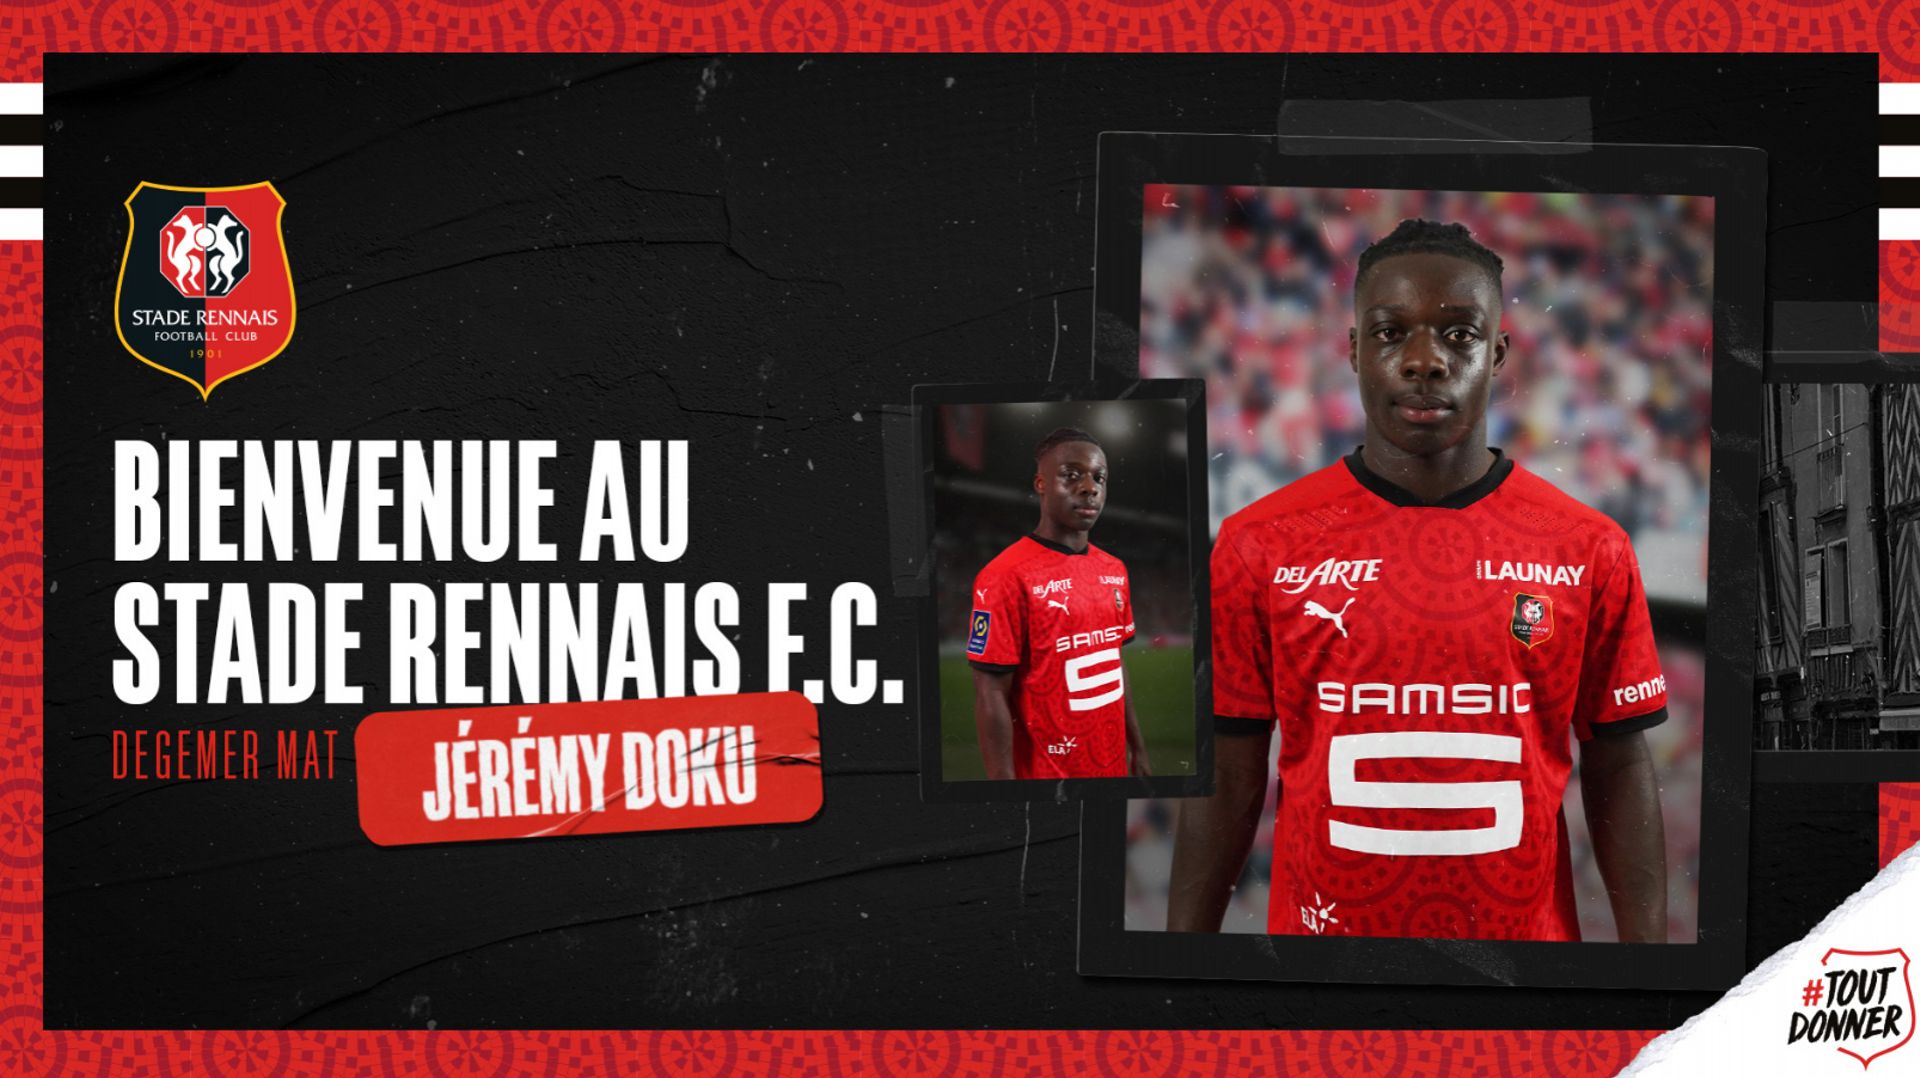 Officiel : Jeremy Doku quitte Anderlecht pour Rennes et devient le transfert sortant le plus cher du Sporting